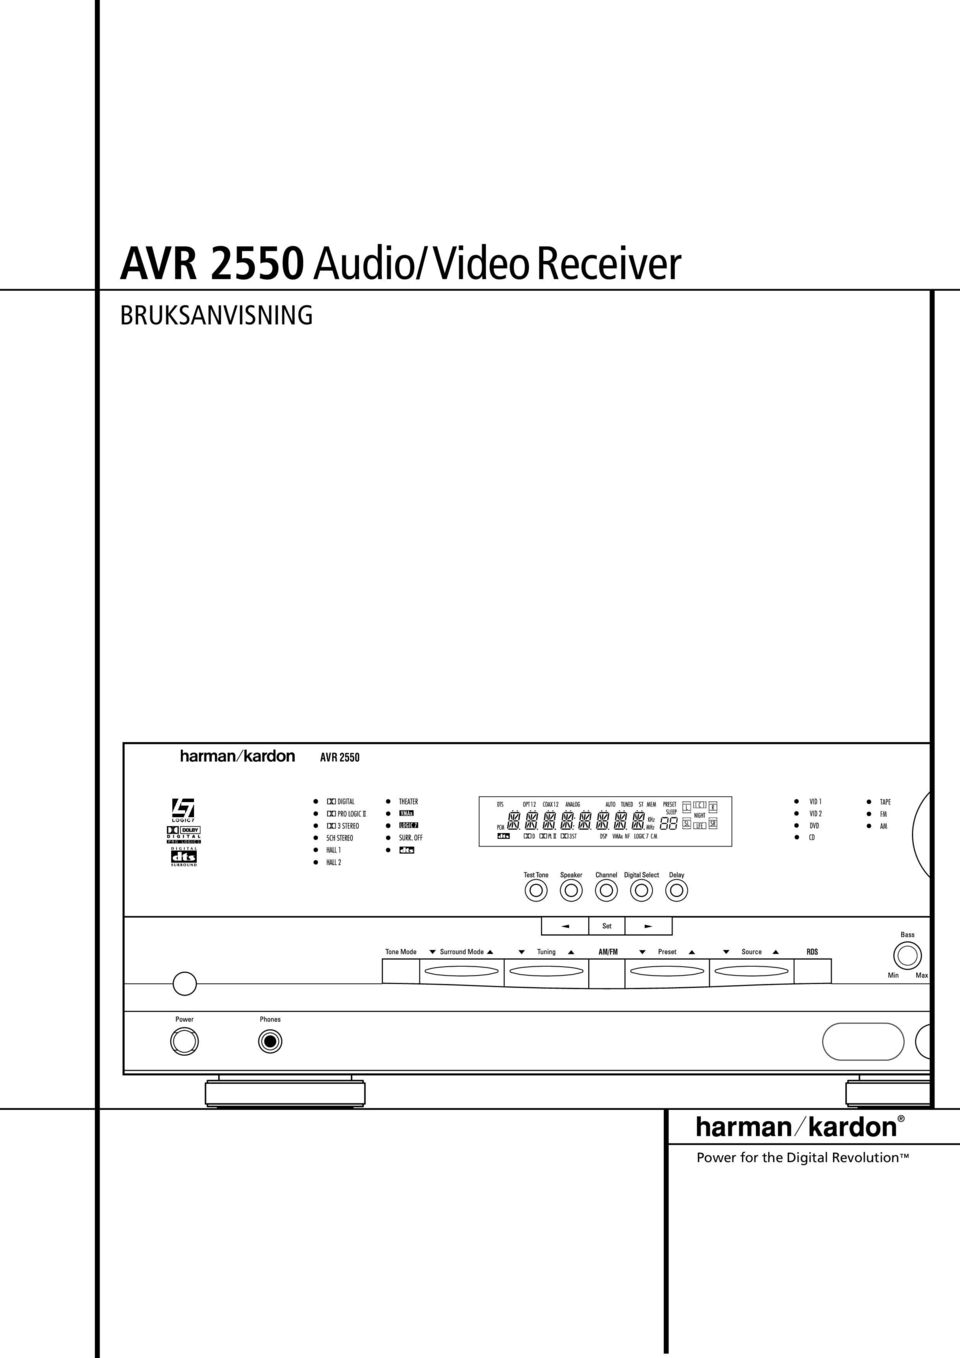 AVR 2550 AM/FM RDS